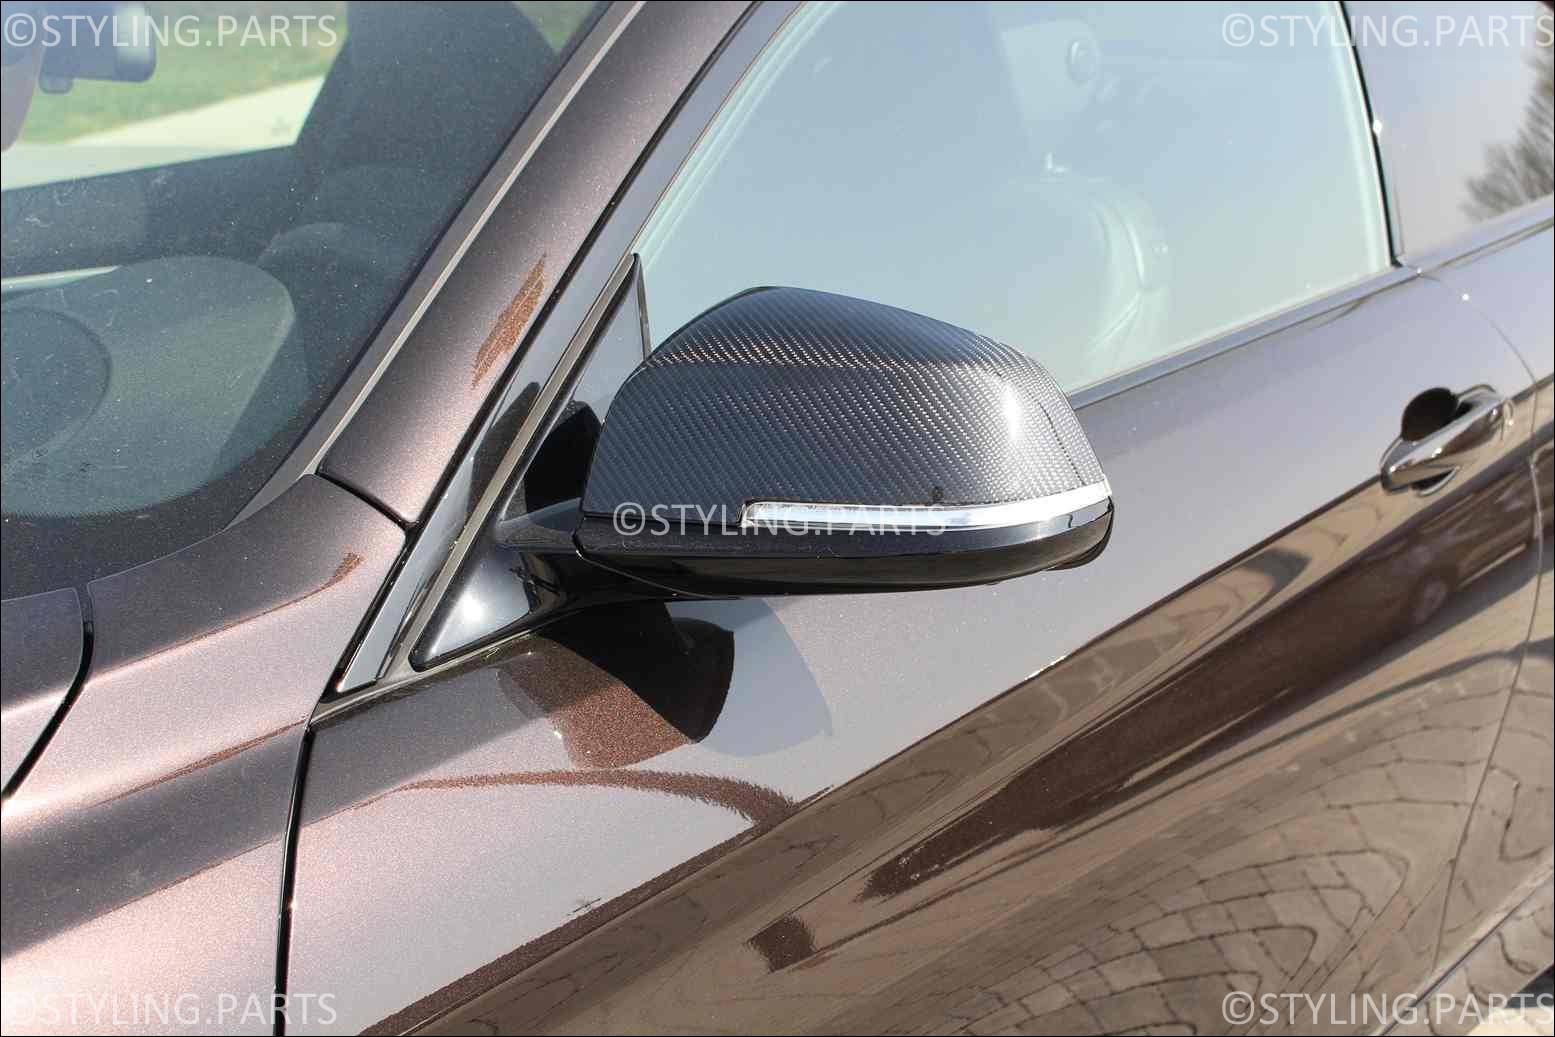 Cstar ABS Spiegelkappen V1.0 unlackiert passend für BMW F30 F31 F32, 89,00 €